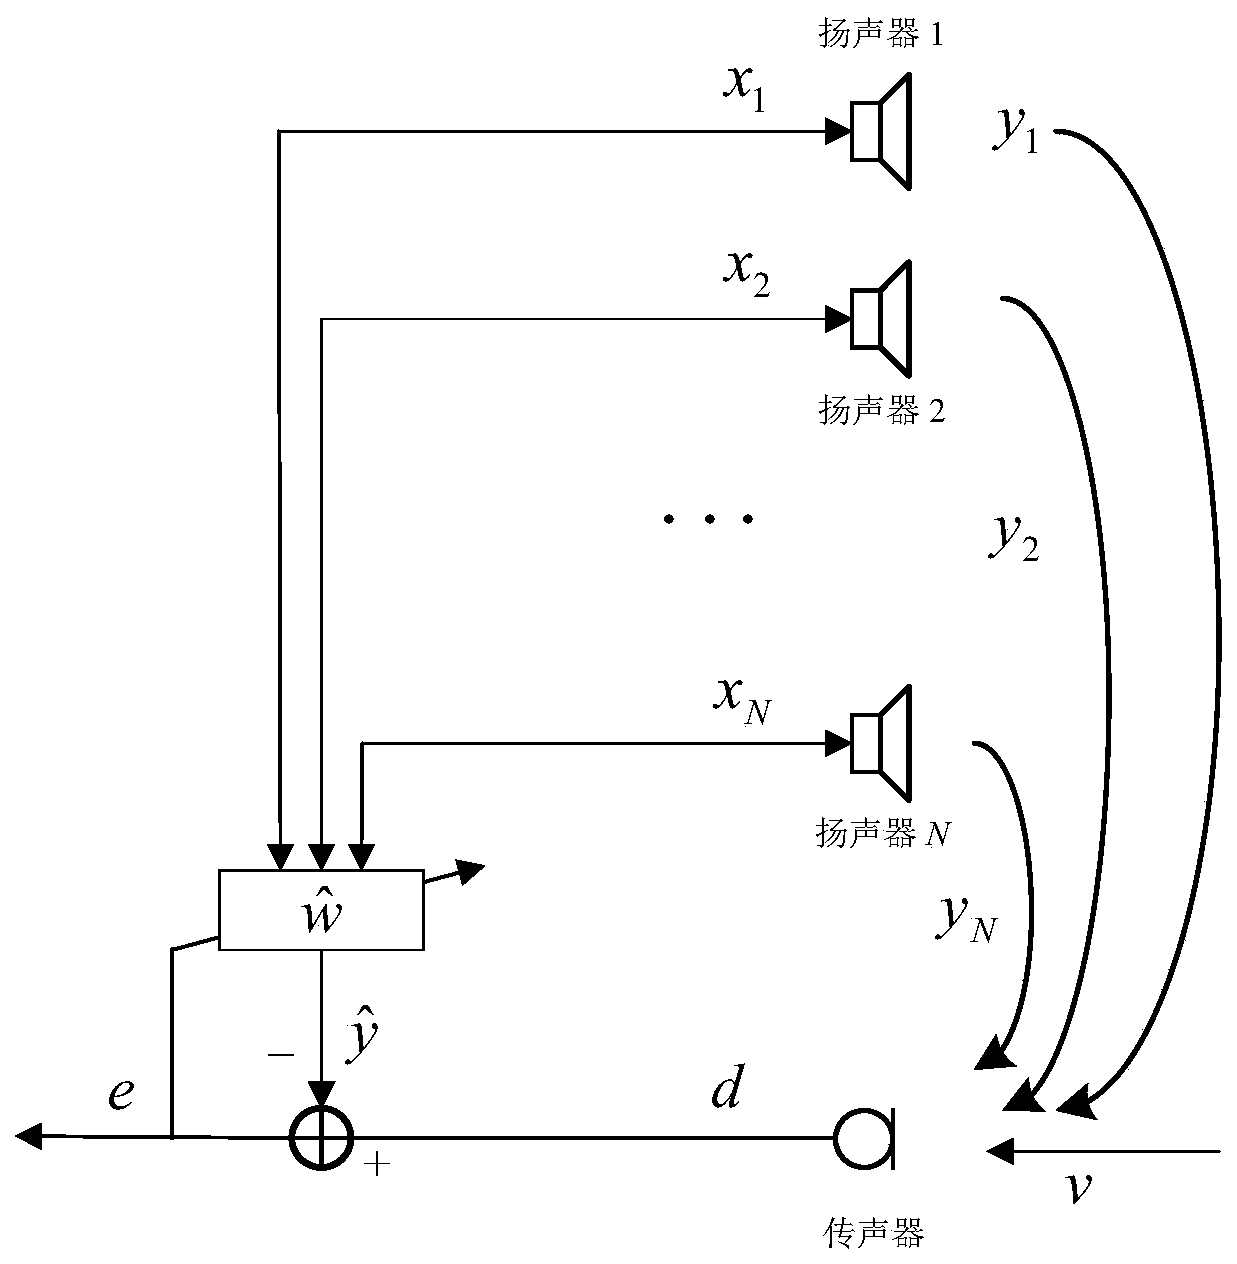 Multi-channel sound amplification system and method for adjusting volume of loudspeaker